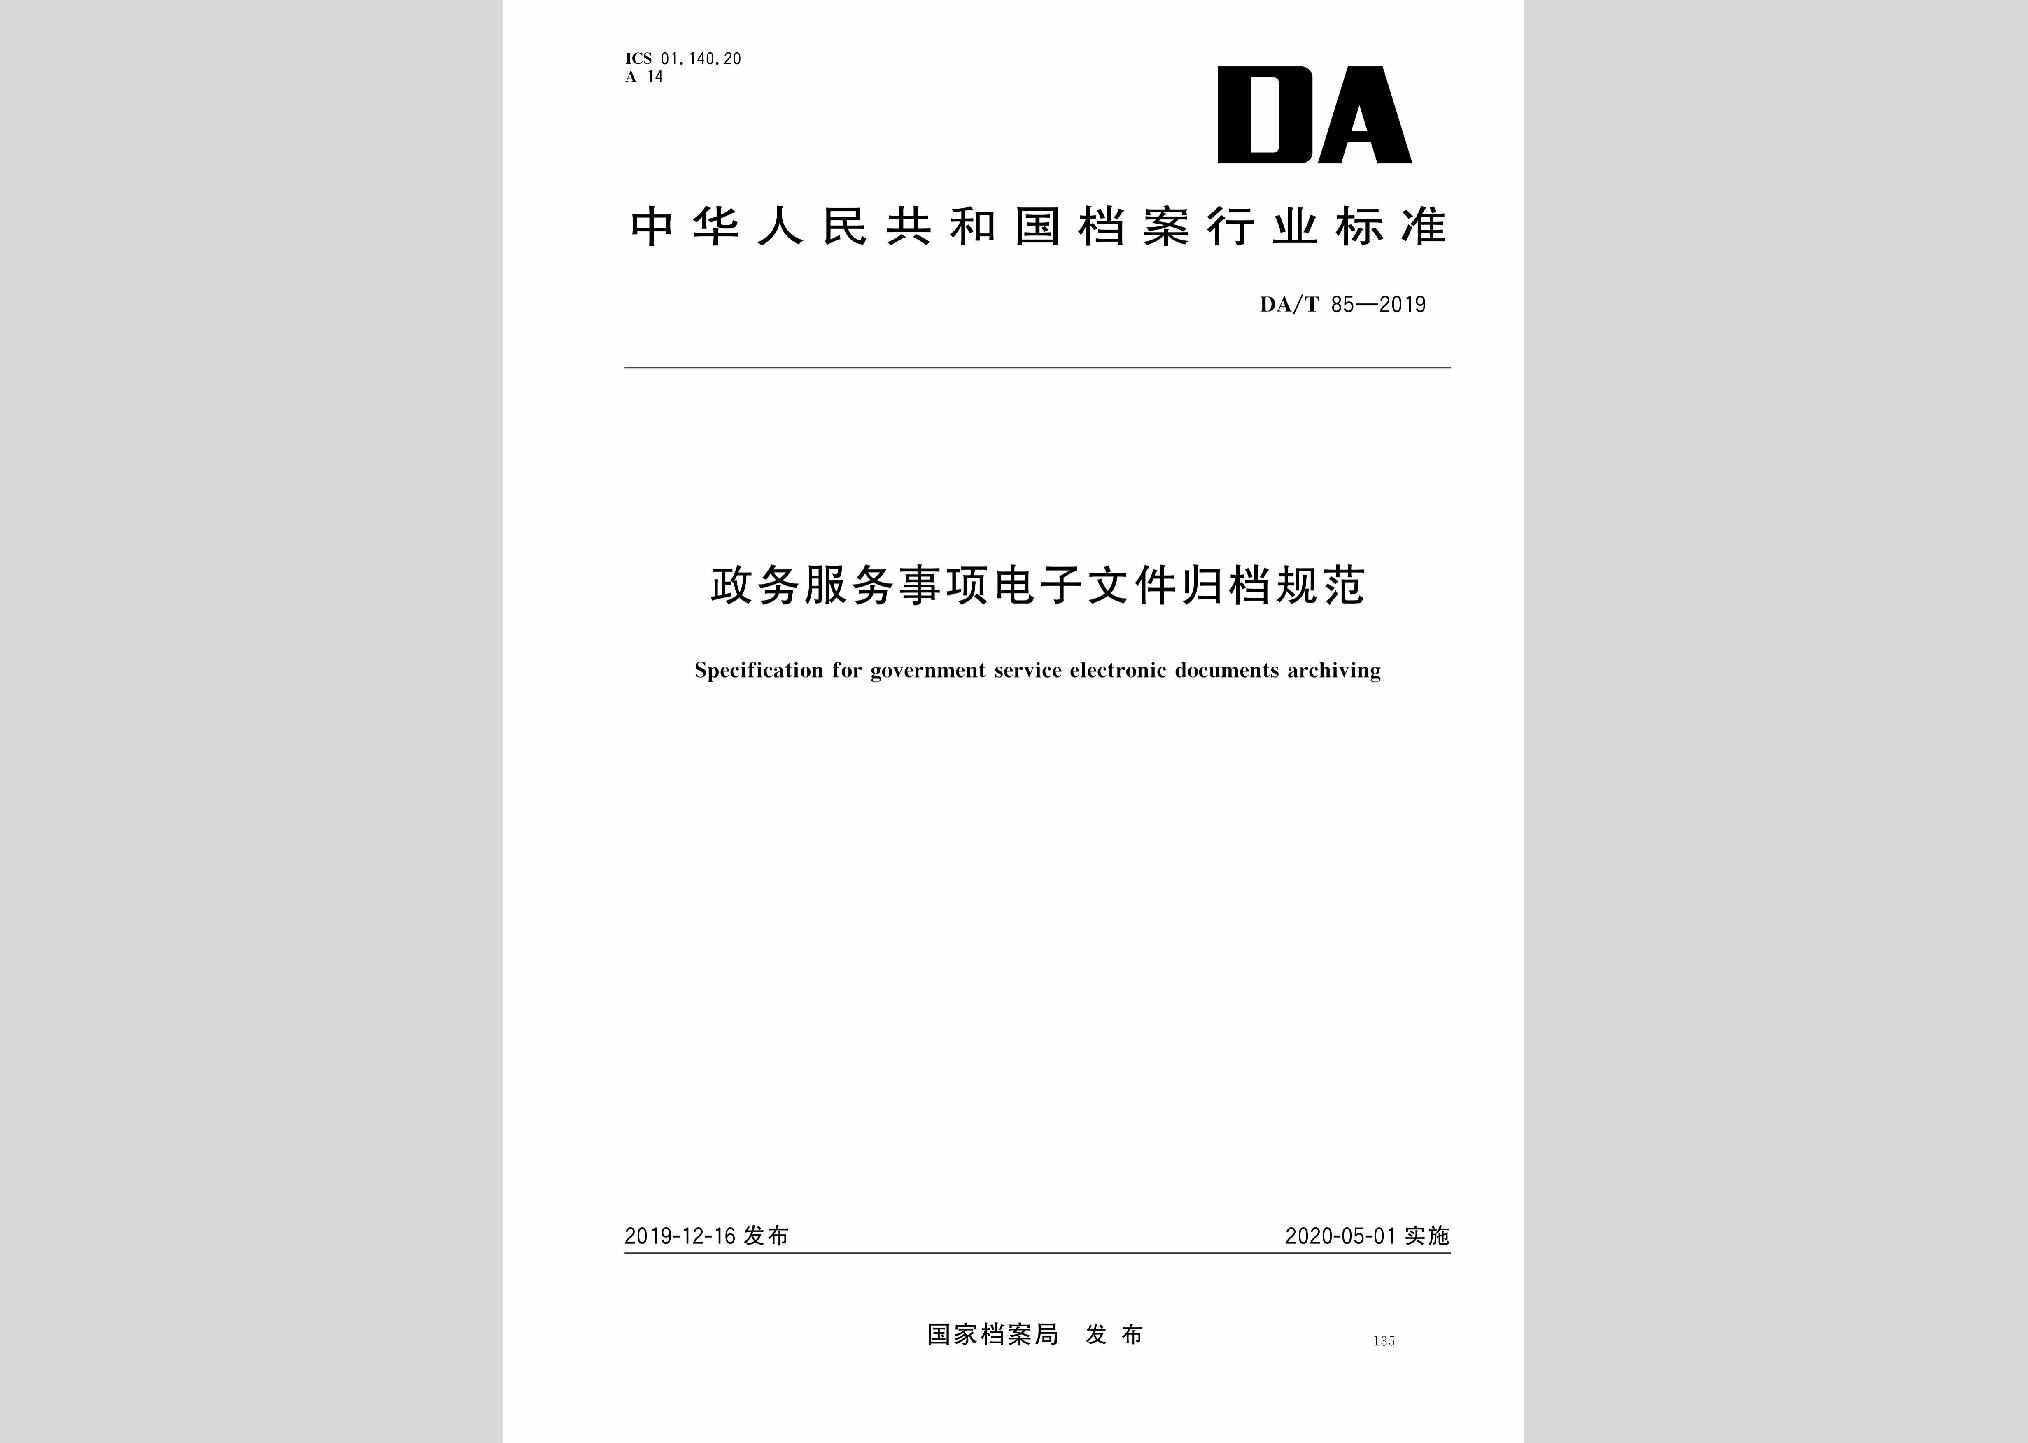 DA/T85-2019：政务服务事项电子文件归档规范